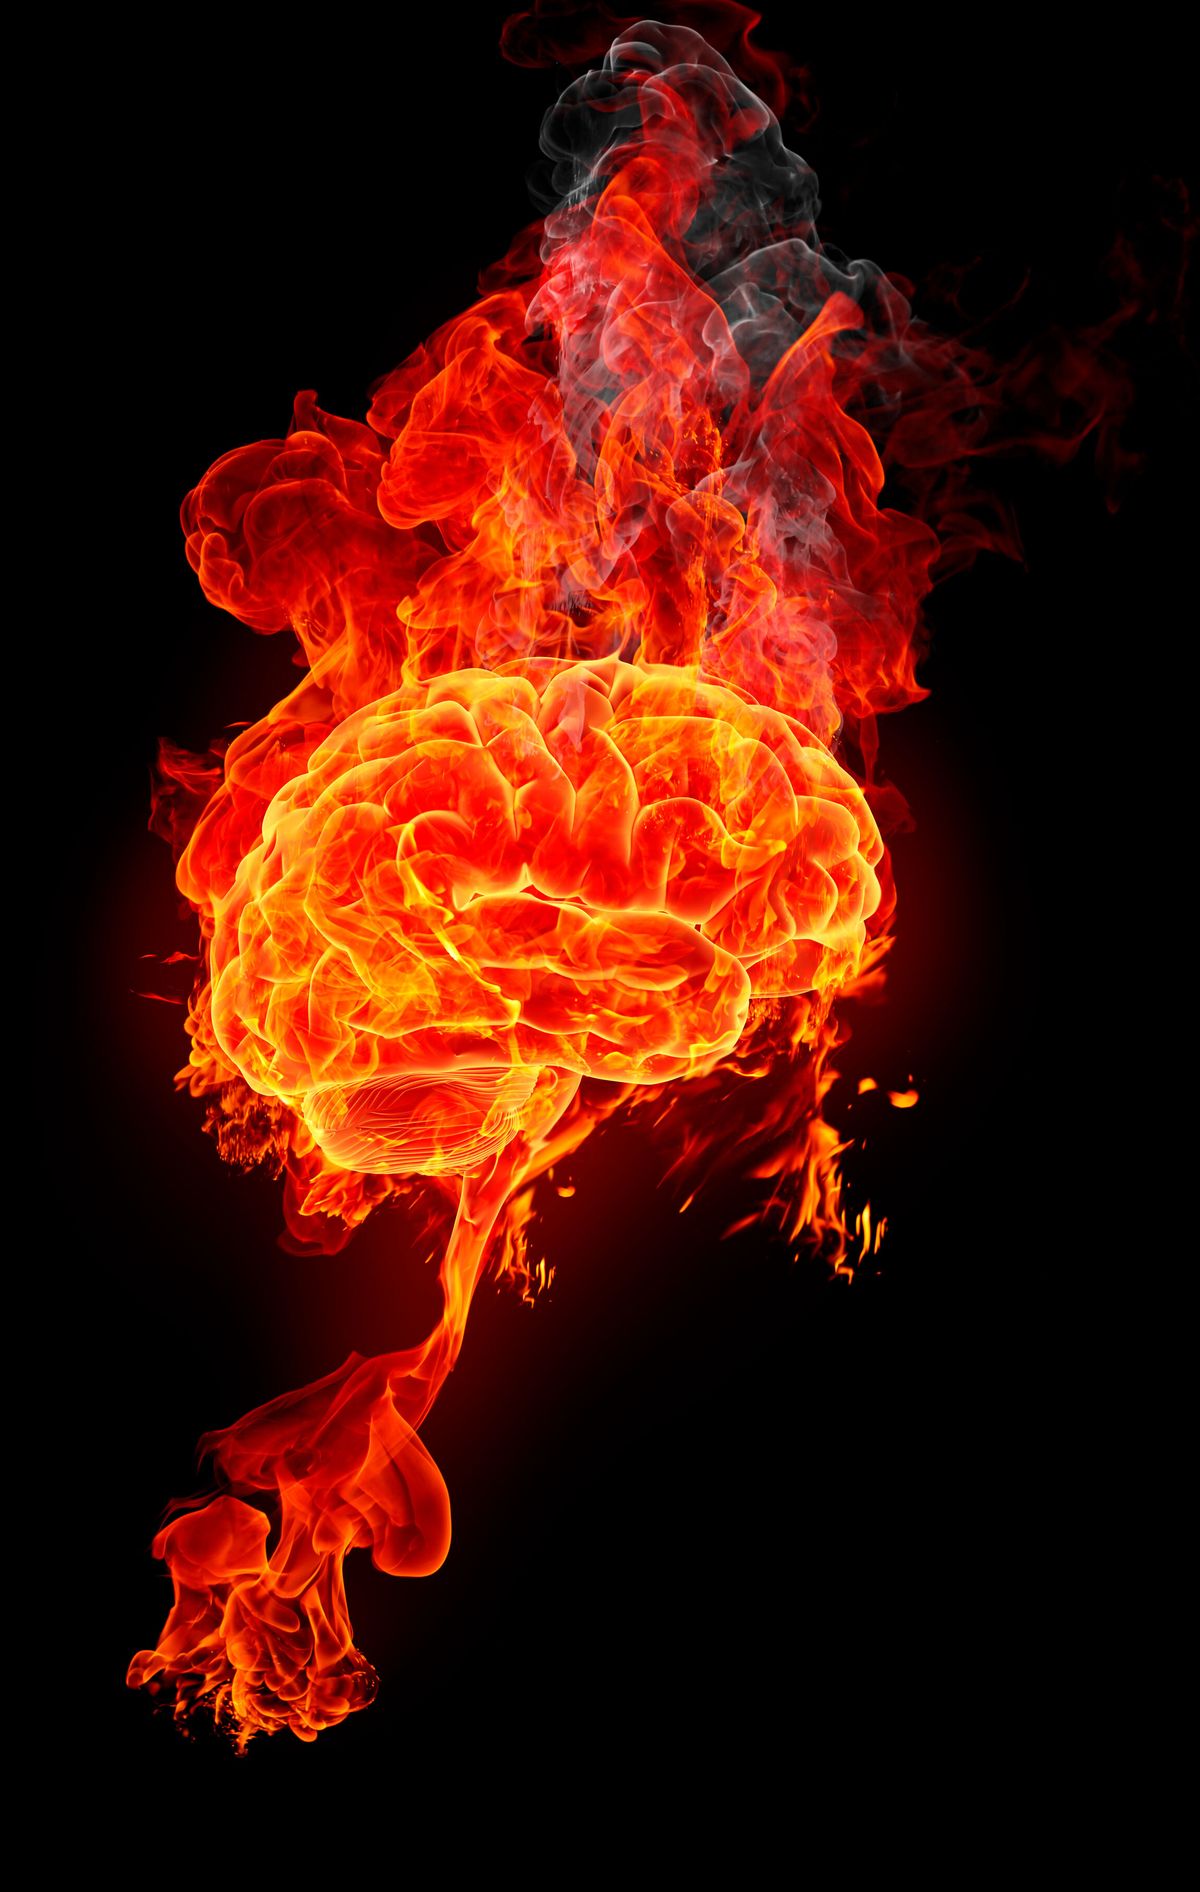 vivid rendering of brain with flames behind it